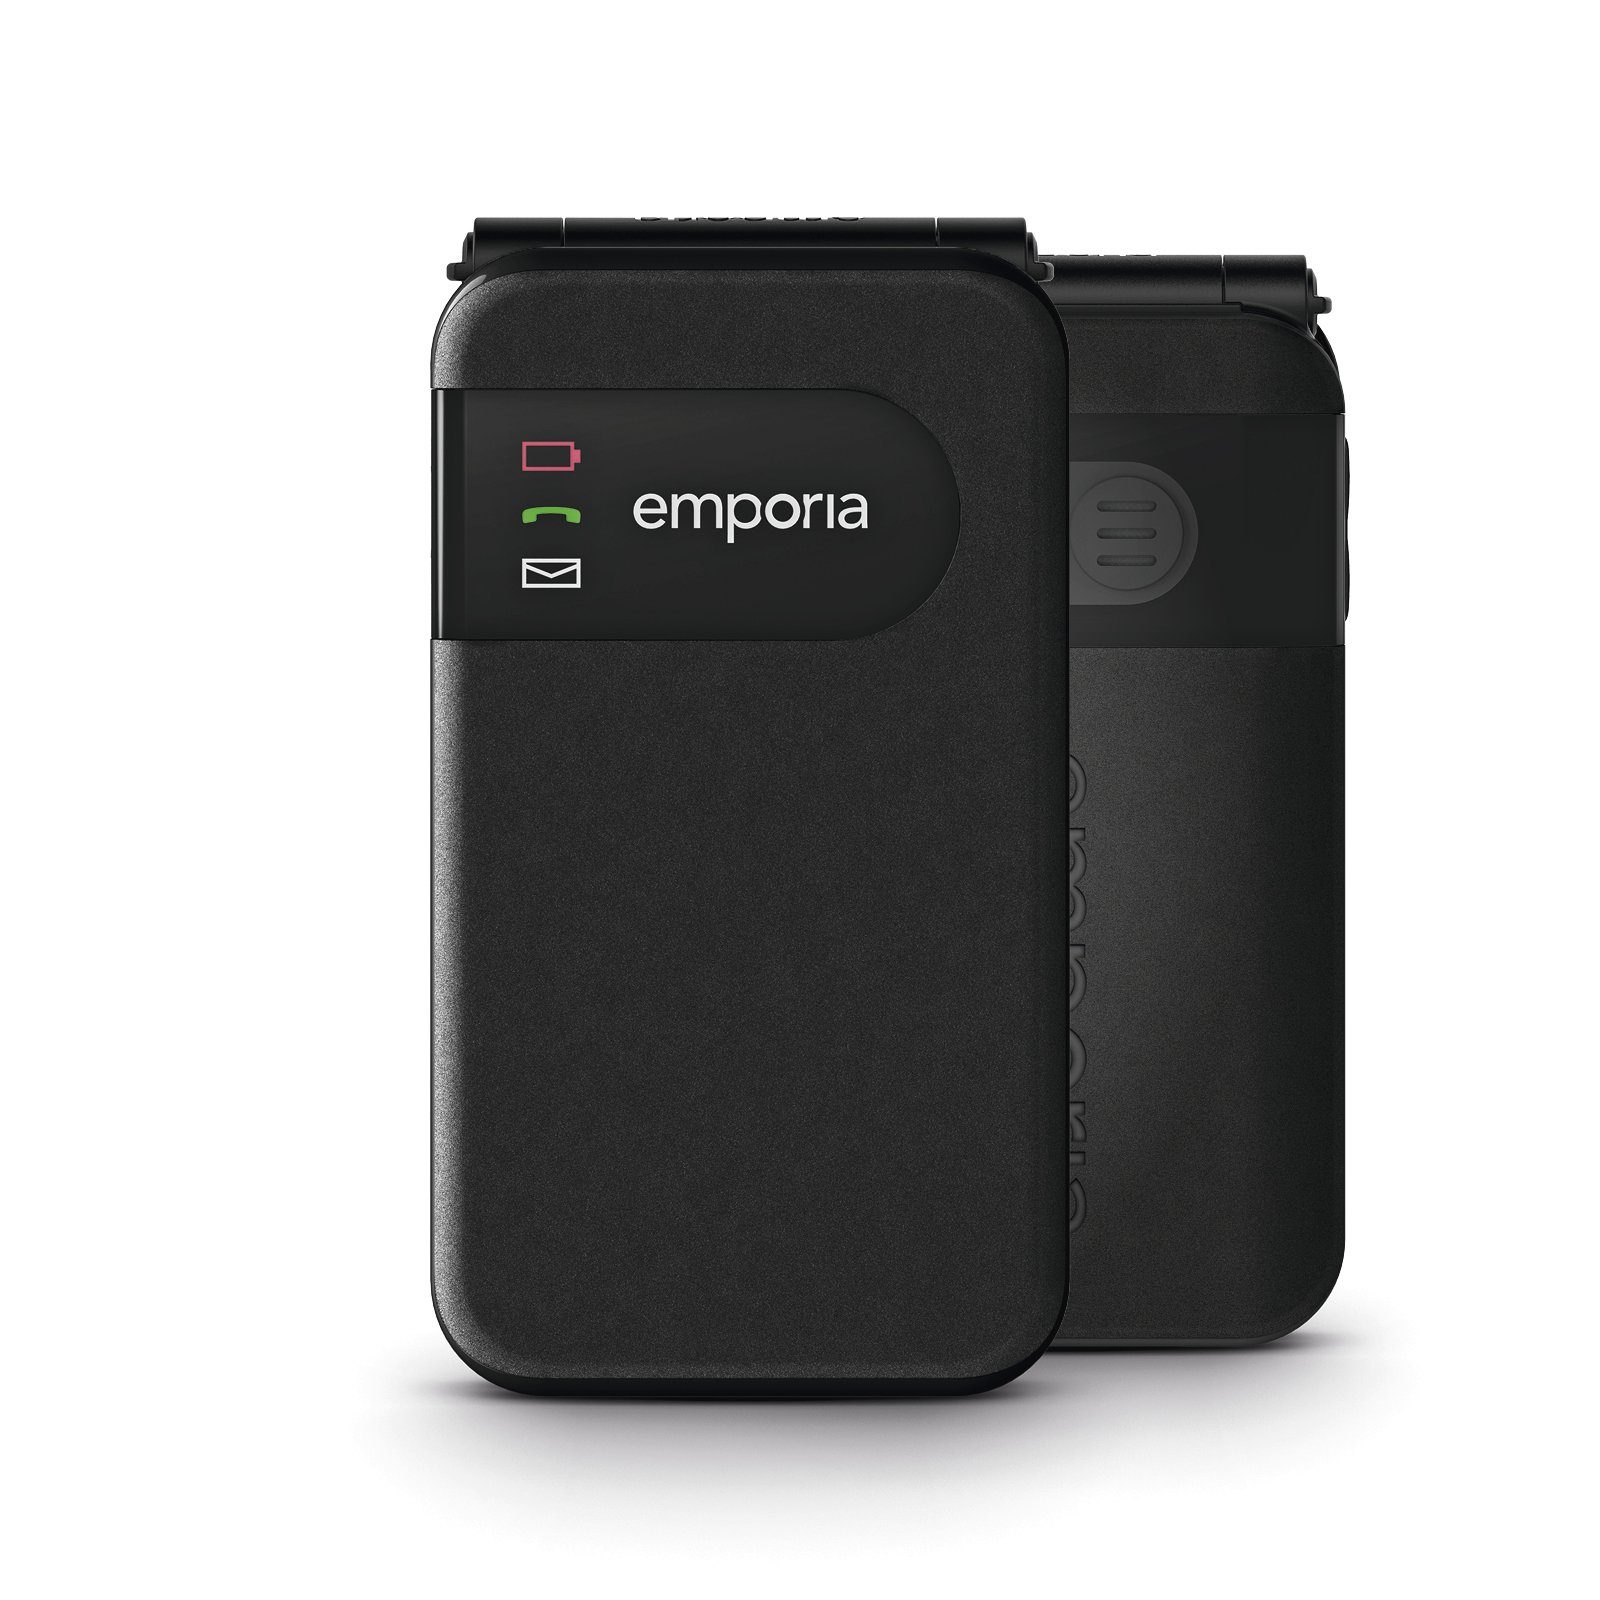 Emporia SIMPLICITY V227-2G Smartphone (7,1 cm/2,8 Zoll, 0,064 GB Speicherplatz)